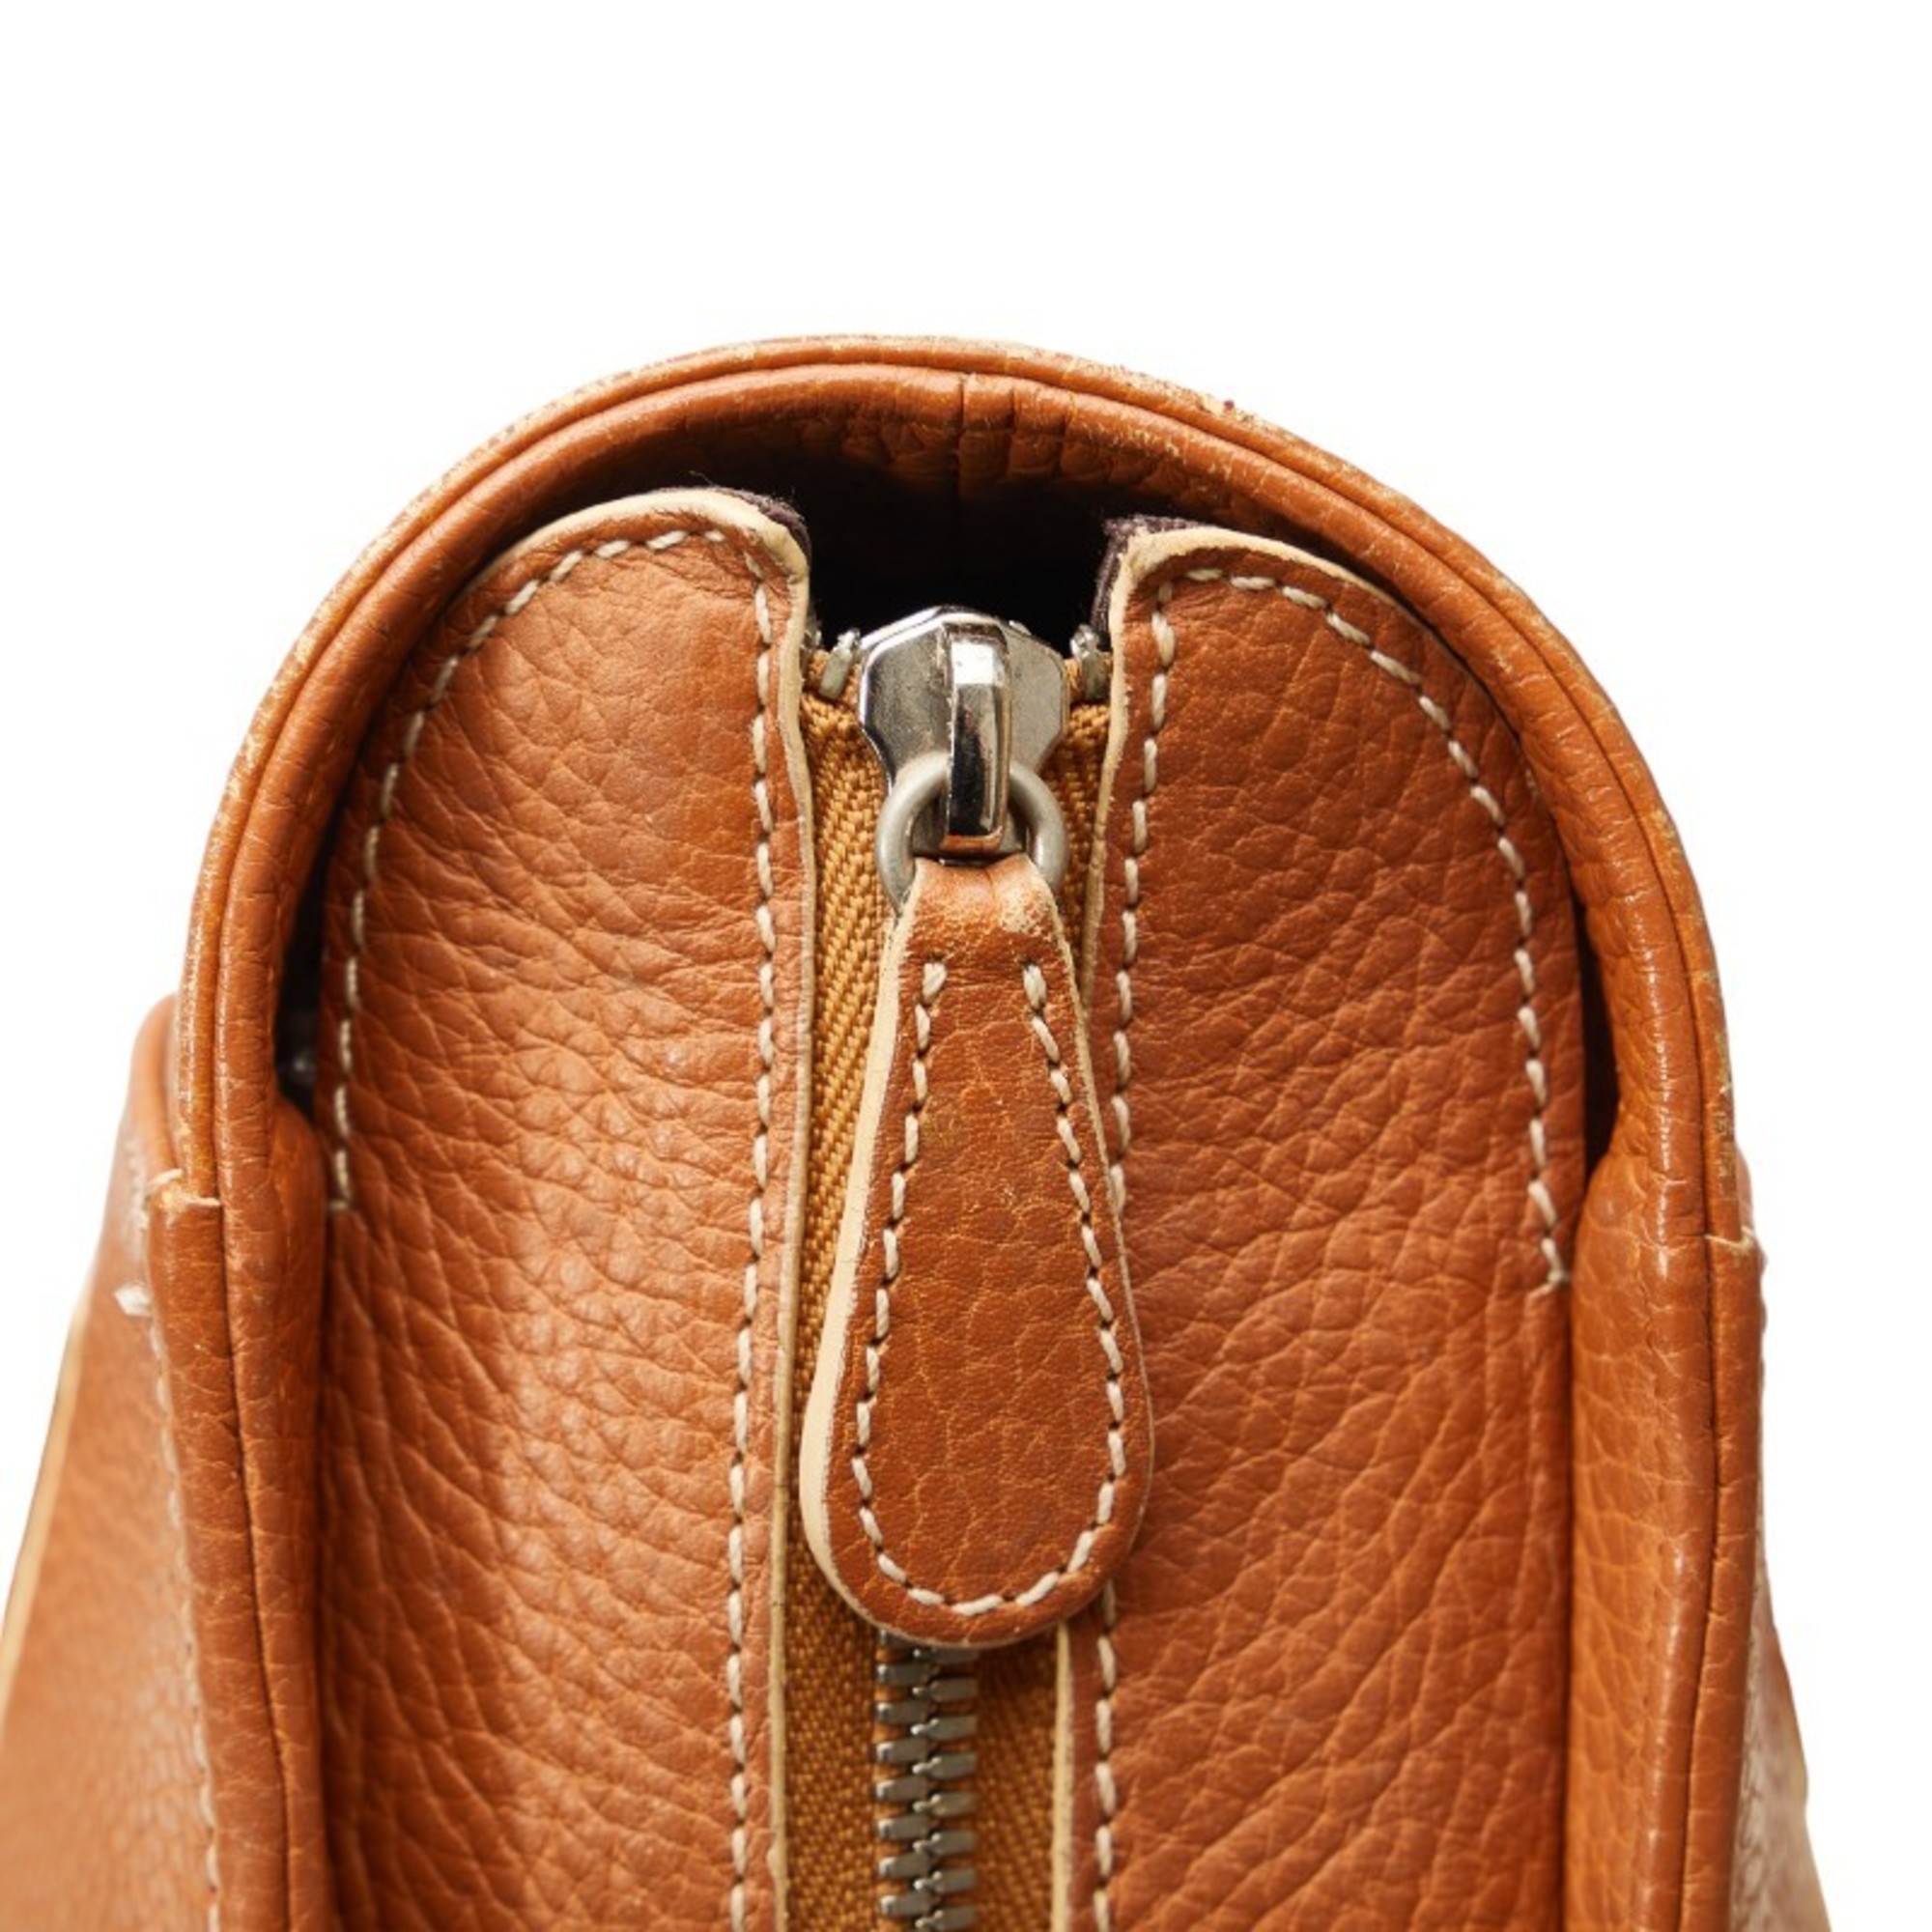 LOEWE Handbag Tote Bag Brown Leather Women's